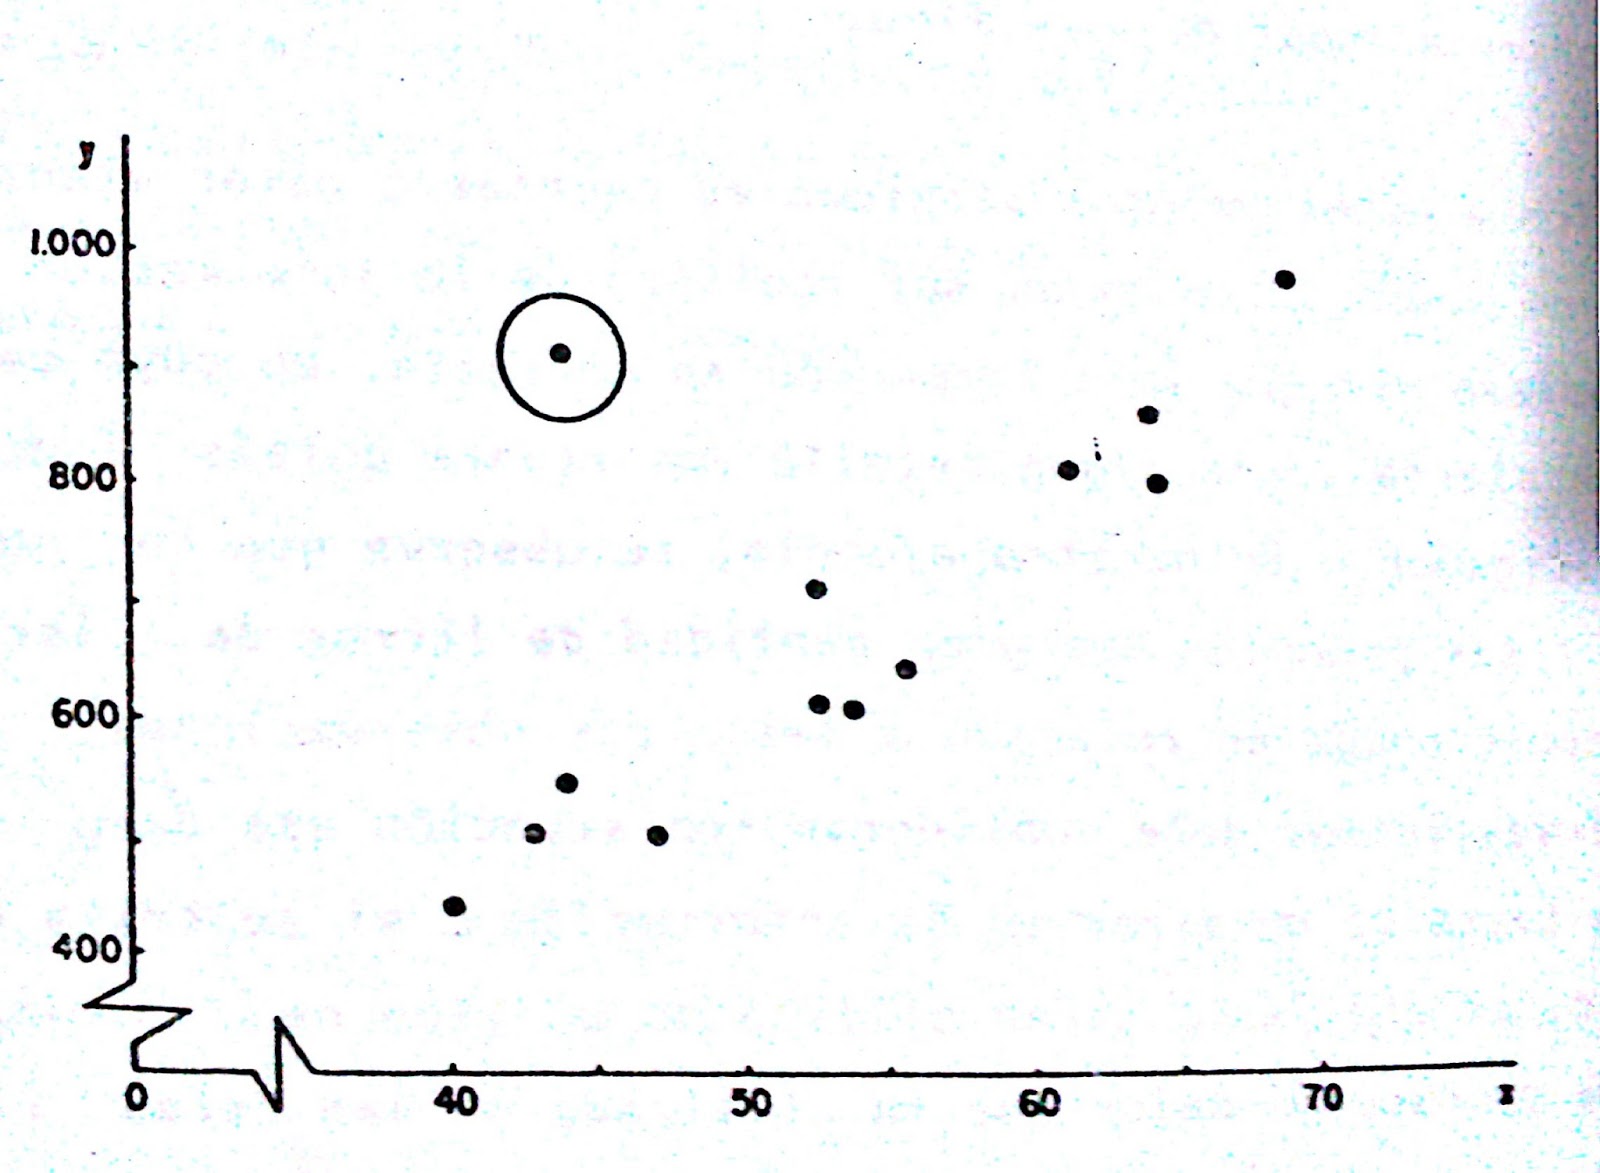 grafico de dispersion